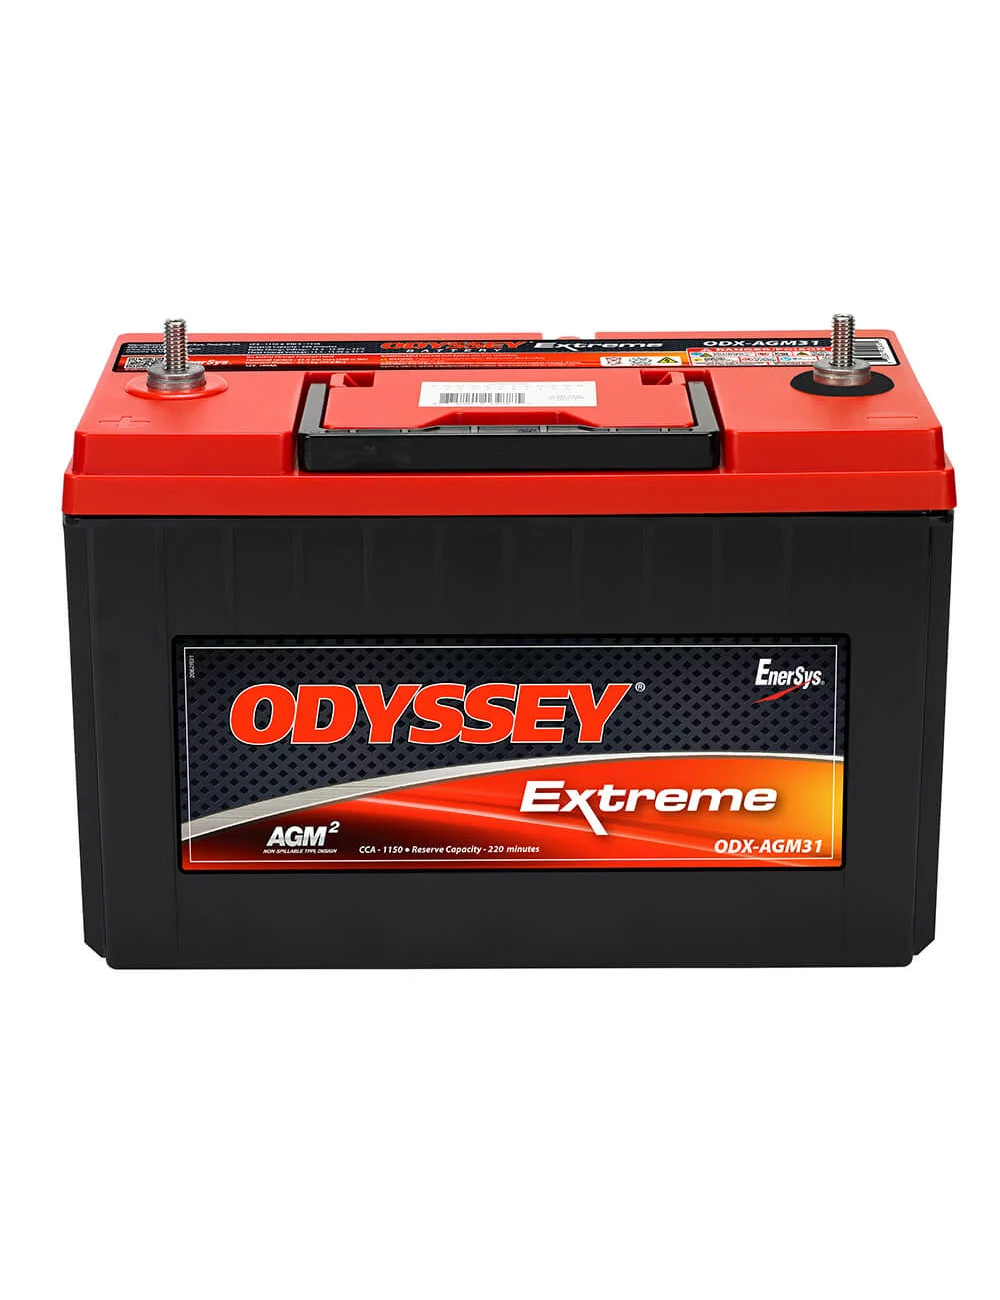 PC2150S batería 12V 100Ah C20 Odyssey Extreme ODX-AGM31 - ODX-AGM31 -  -  - 1